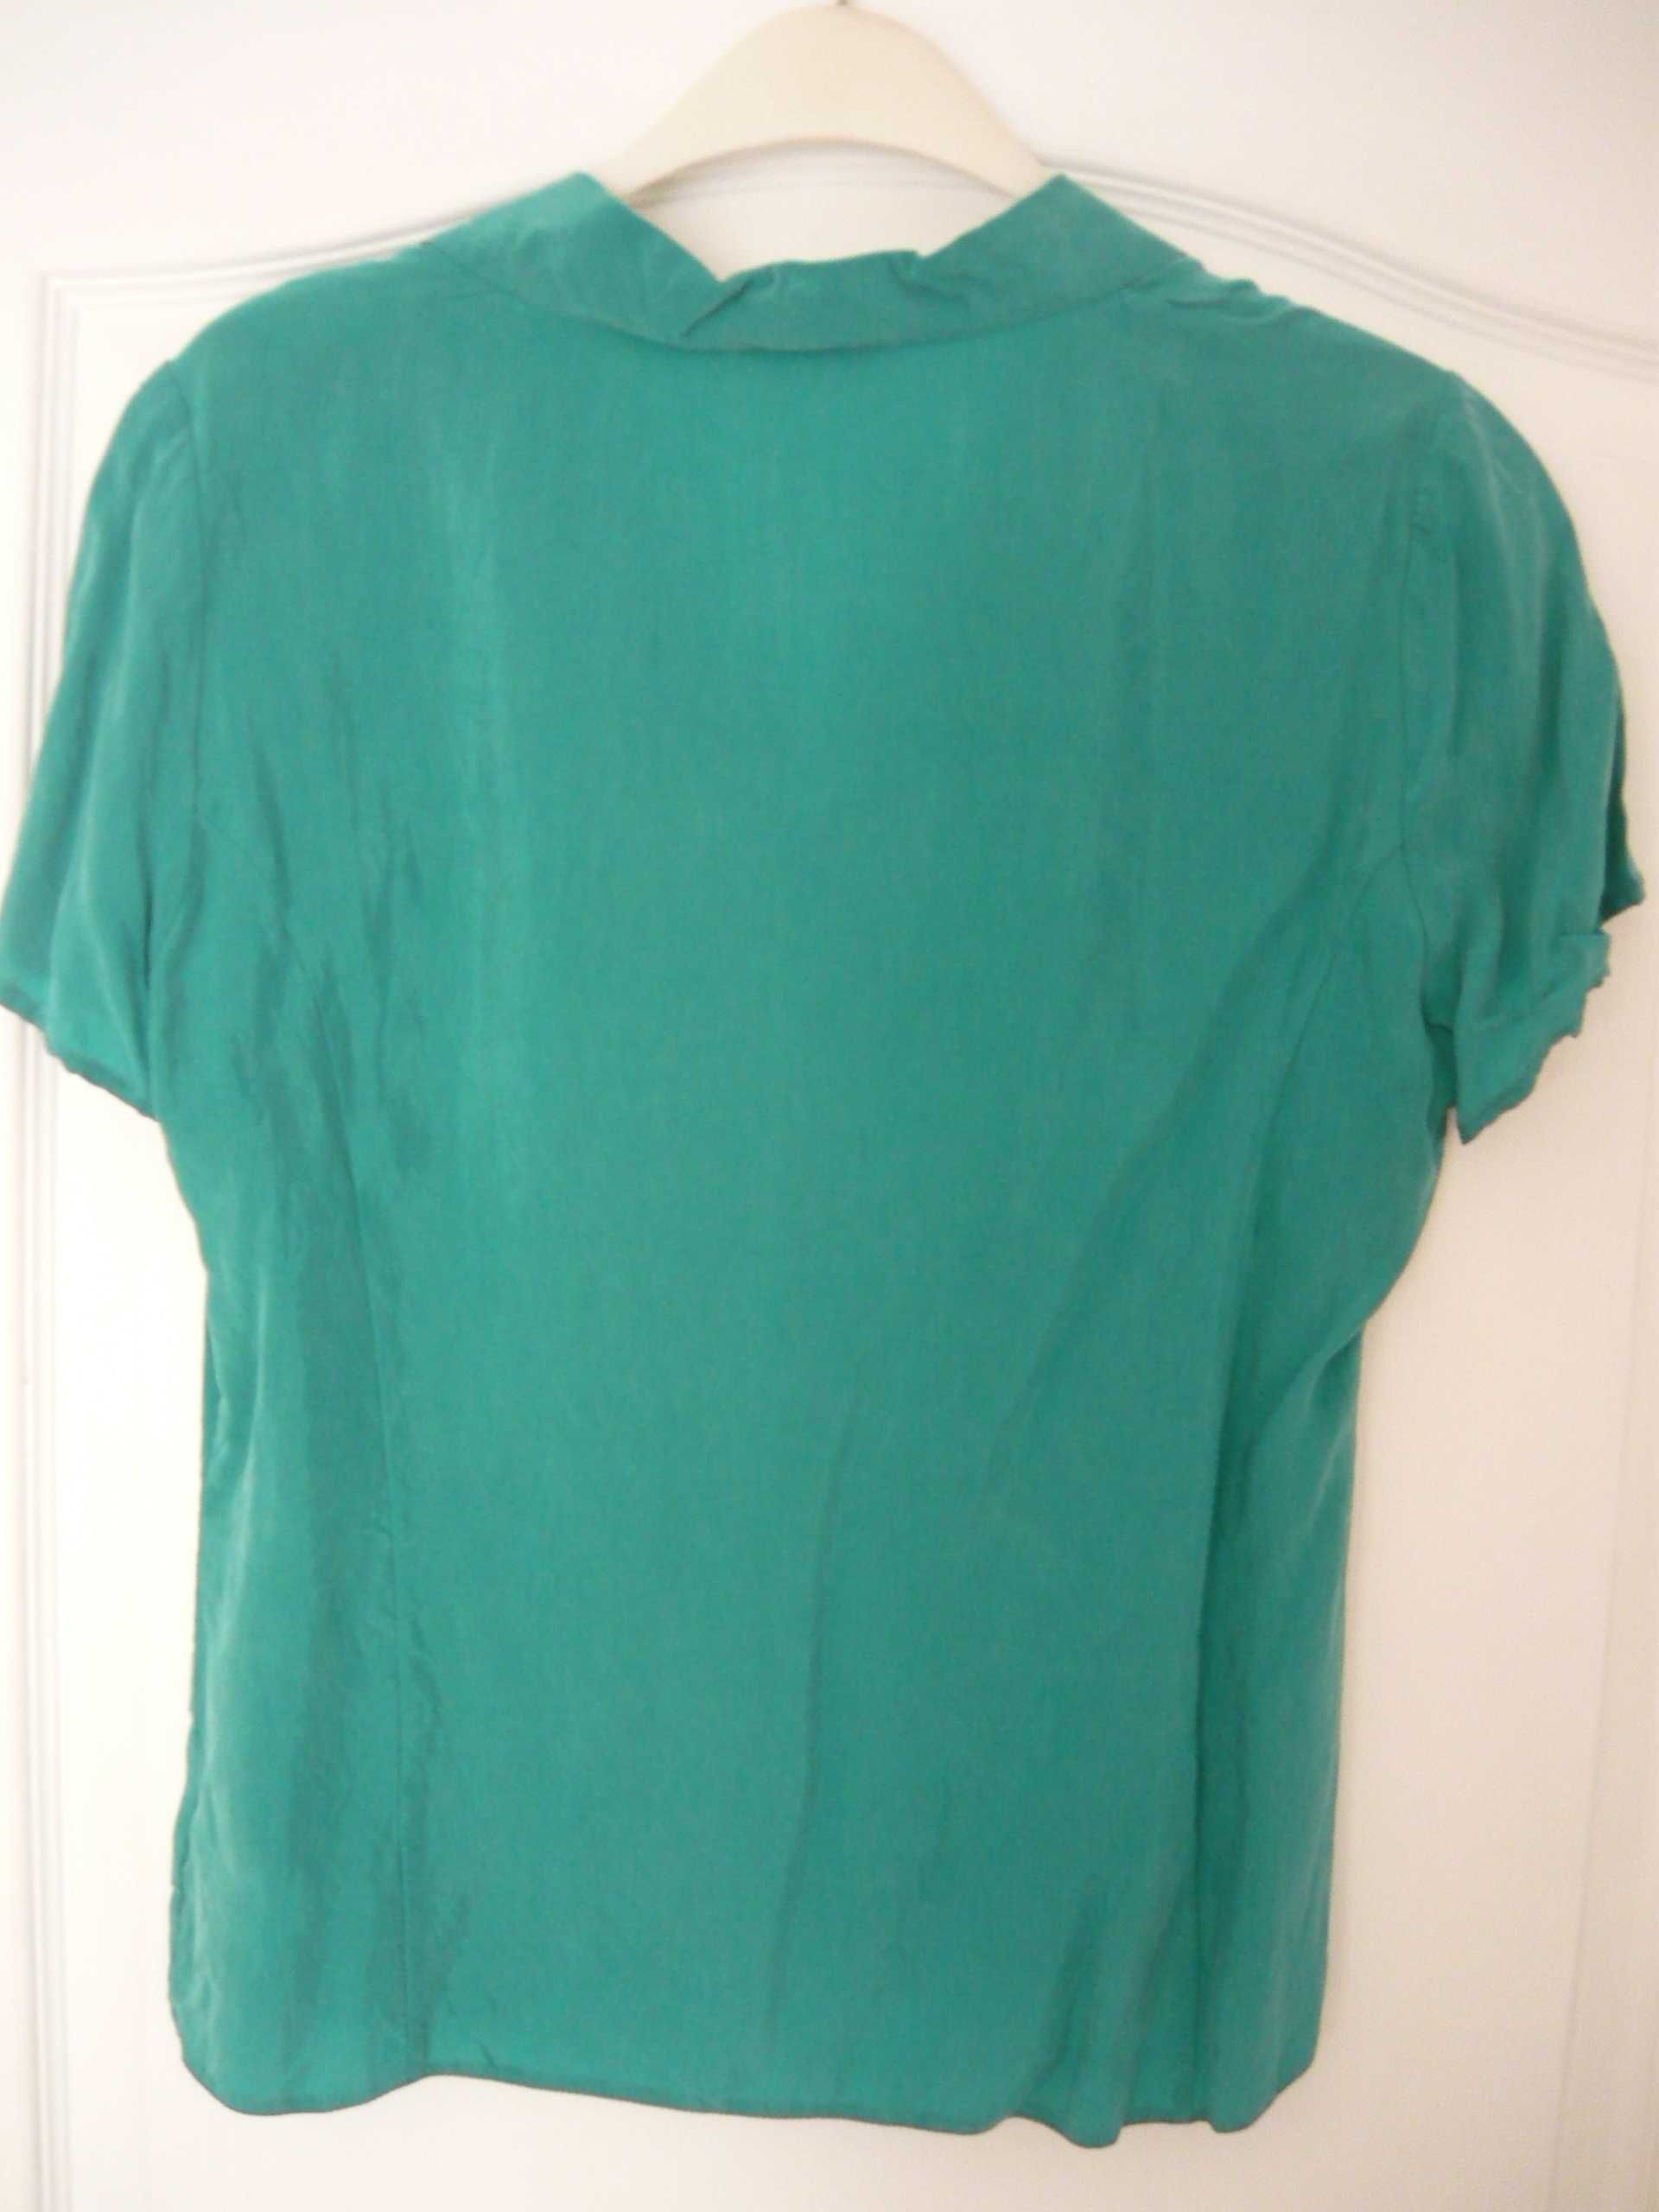 elegancka bluzka wizytowa koszulowa damska 38 wysoka jakość